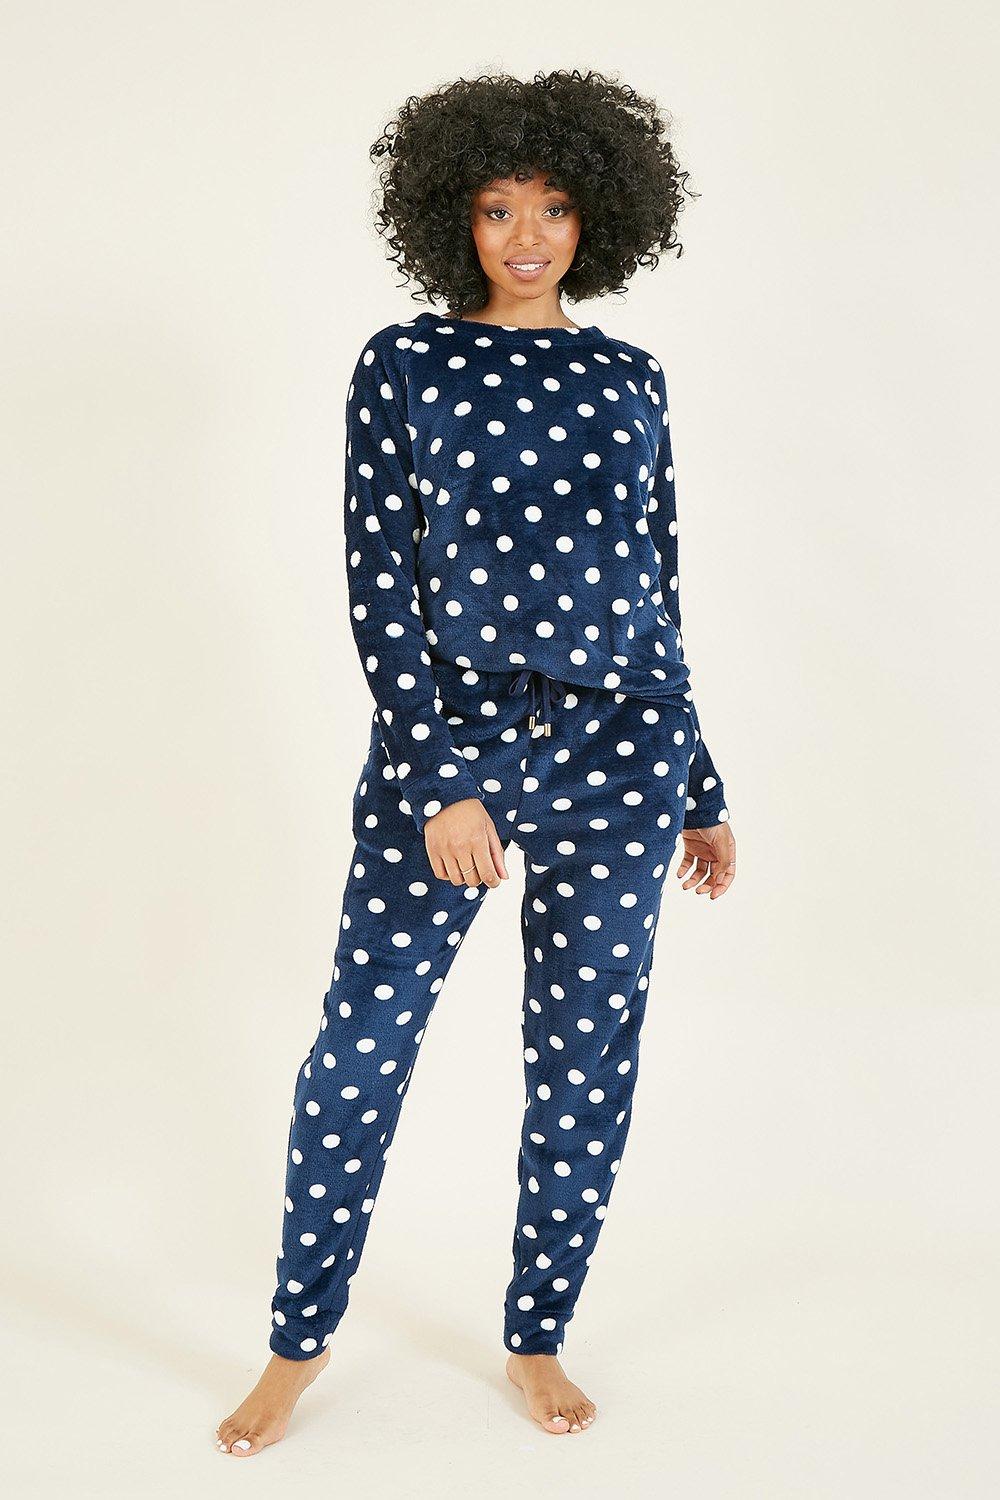 Women's Fleece Pyjamas, Fluffy Nightwear